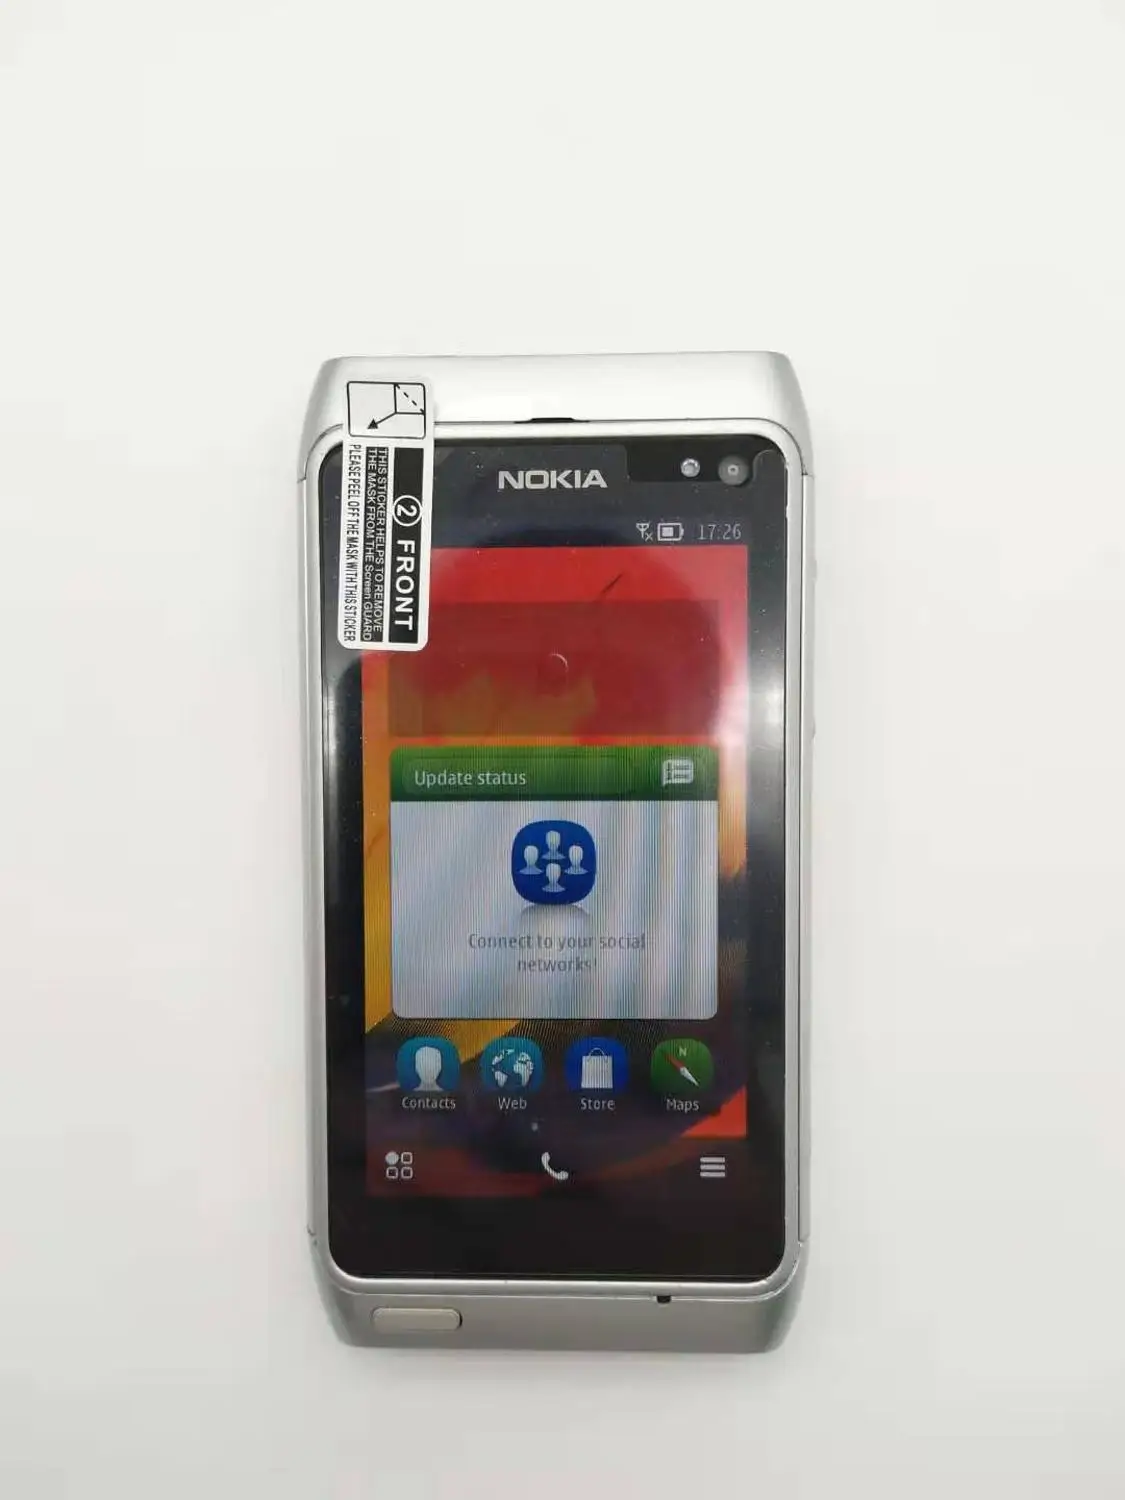 Nokia N8 мобильный телефон 3g wifi gps 12MP сенсорный экран 3," разблокированный мобильный телефон 16 Гб внутренний отремонтированный - Цвет: Серебристый